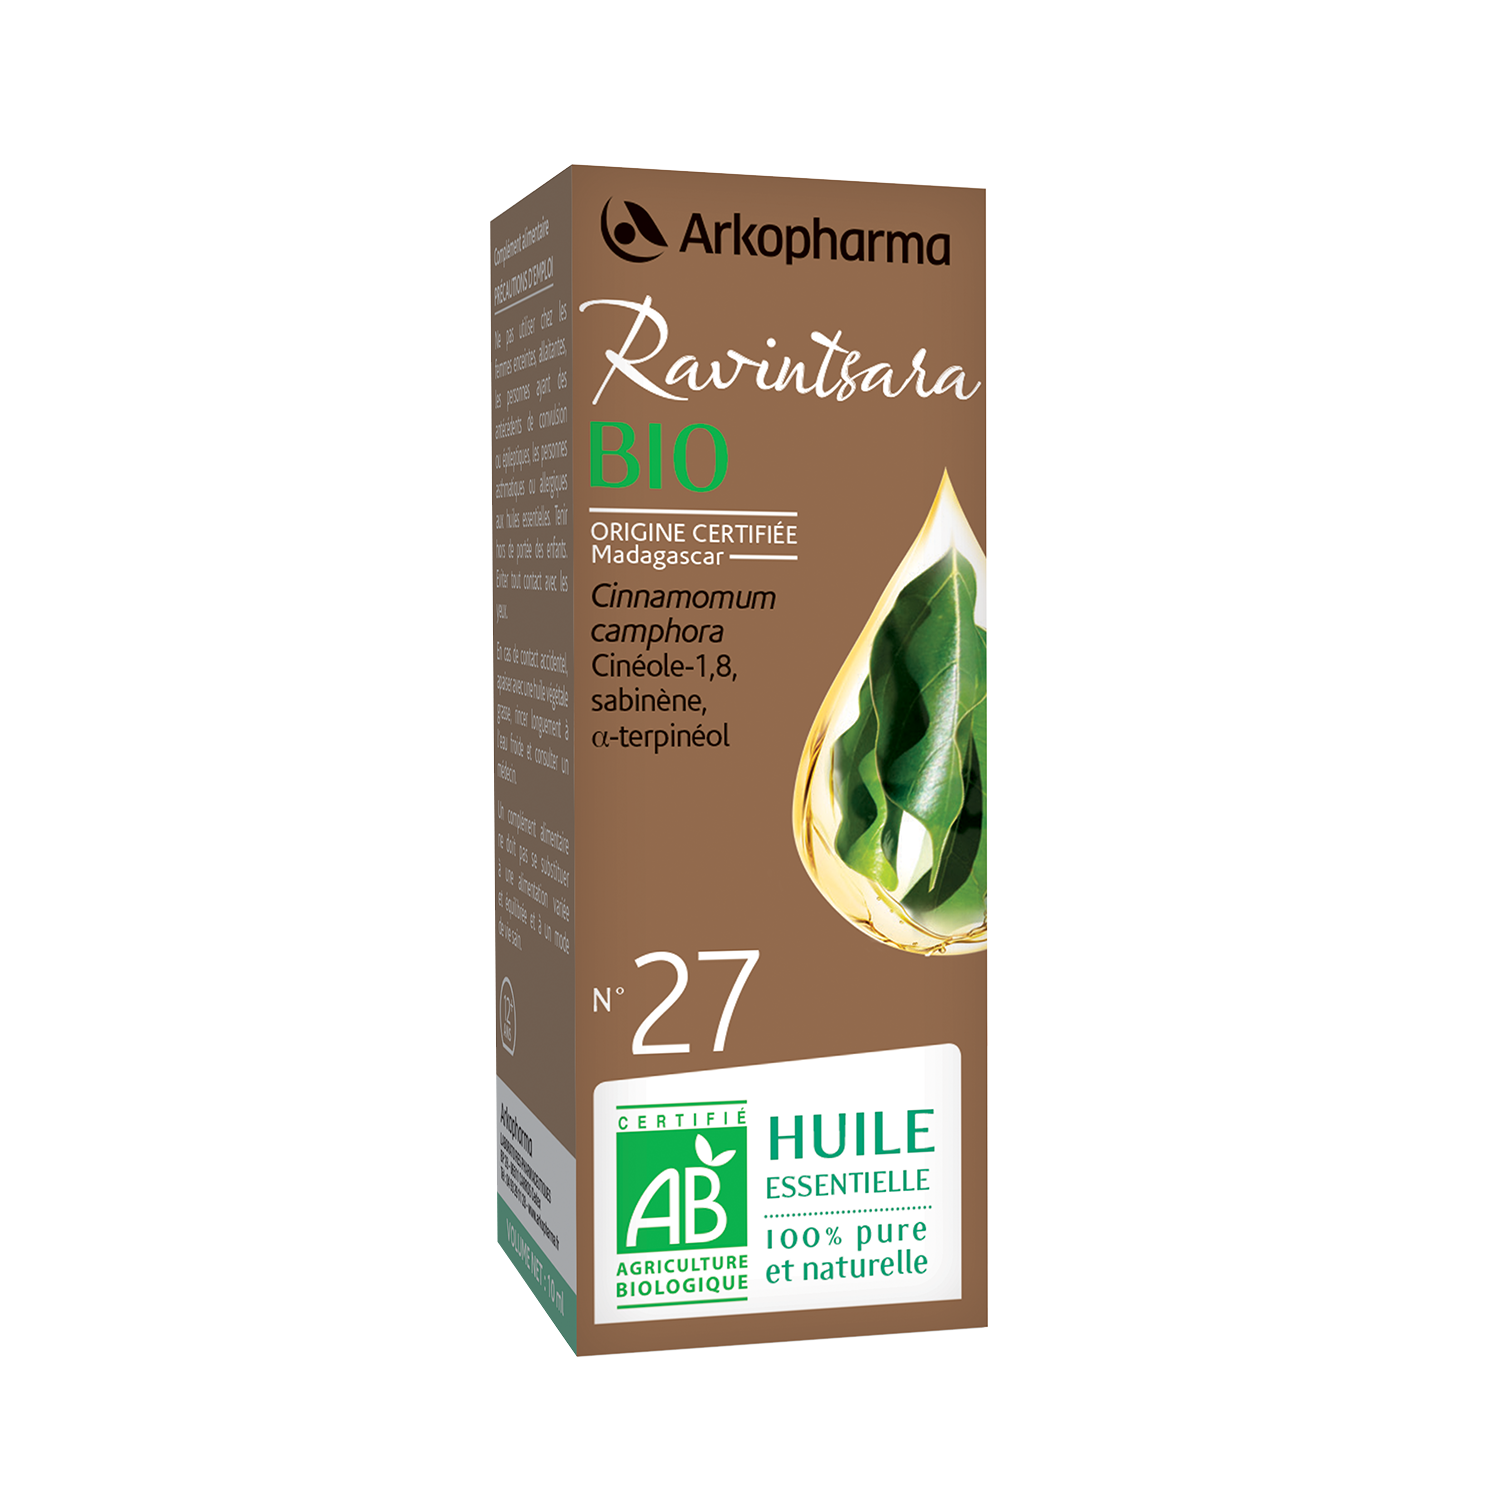 Huile essentielle Ravintsara bio n°27 Arkopharma - flacon de 5 ml